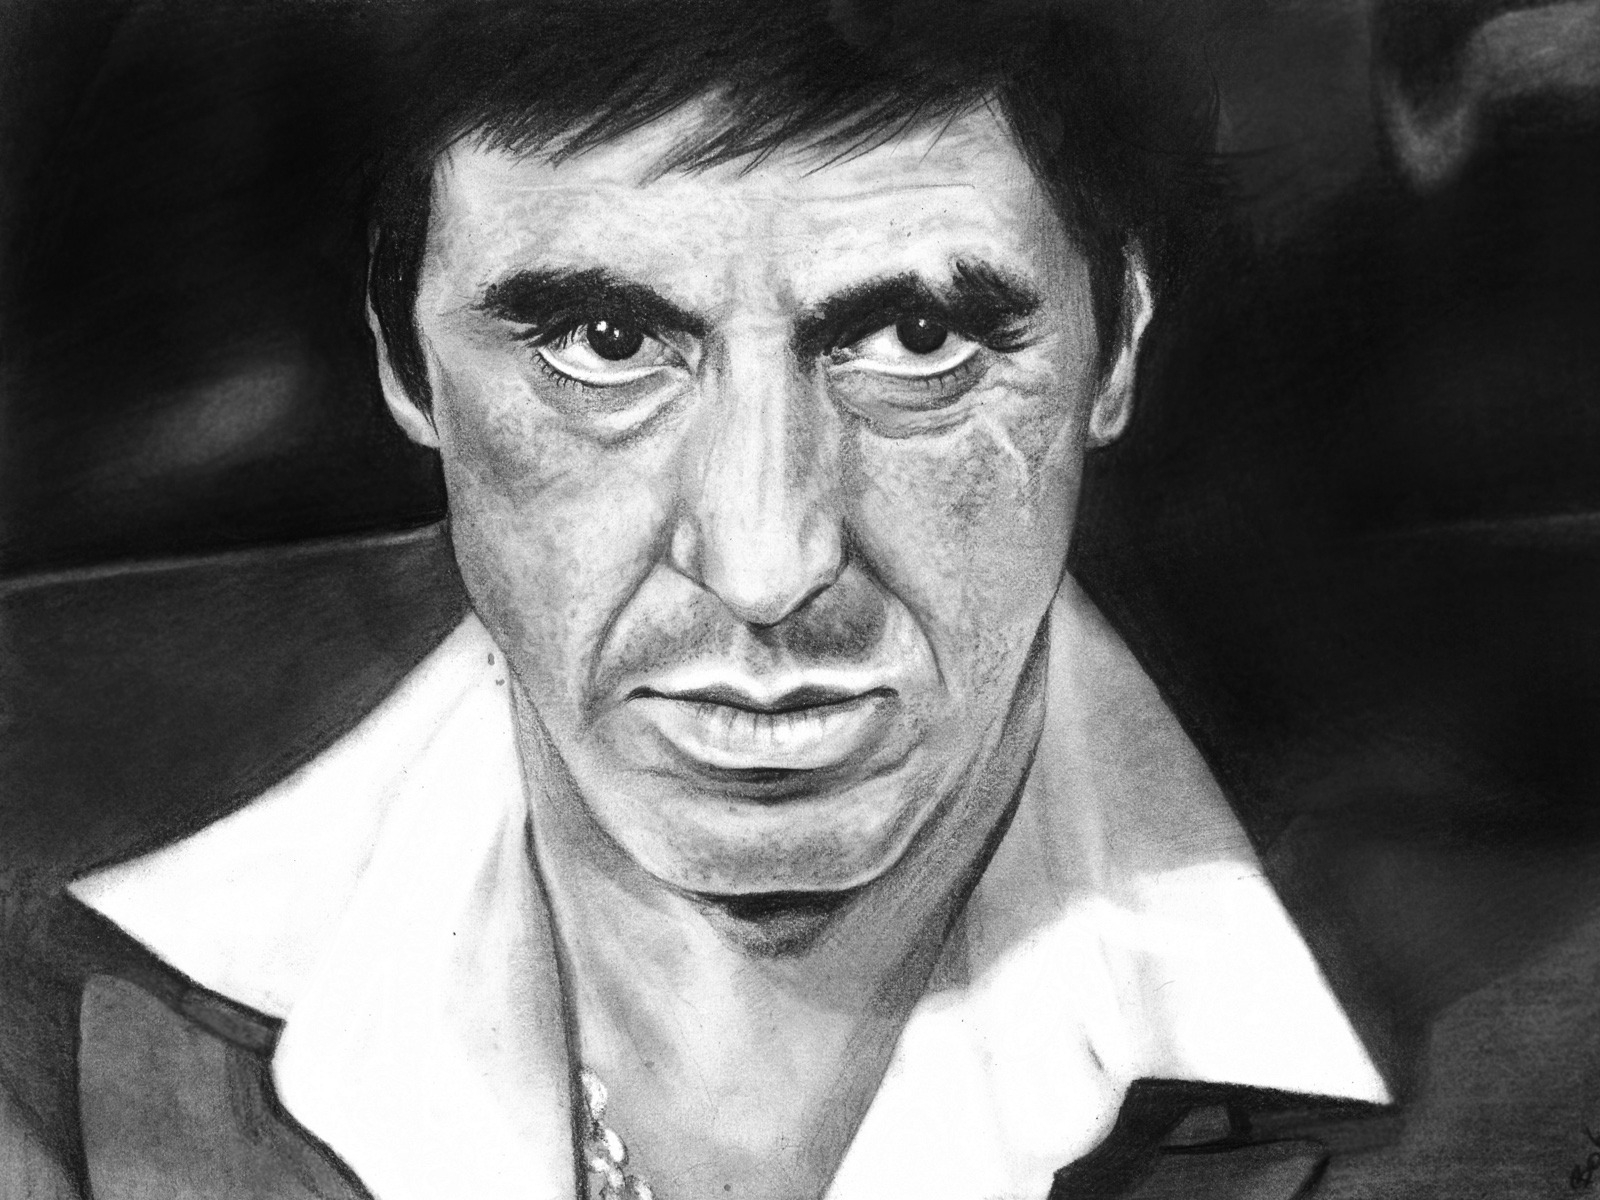 Al Pacino Scarface Fan Art for 1600 x 1200 resolution